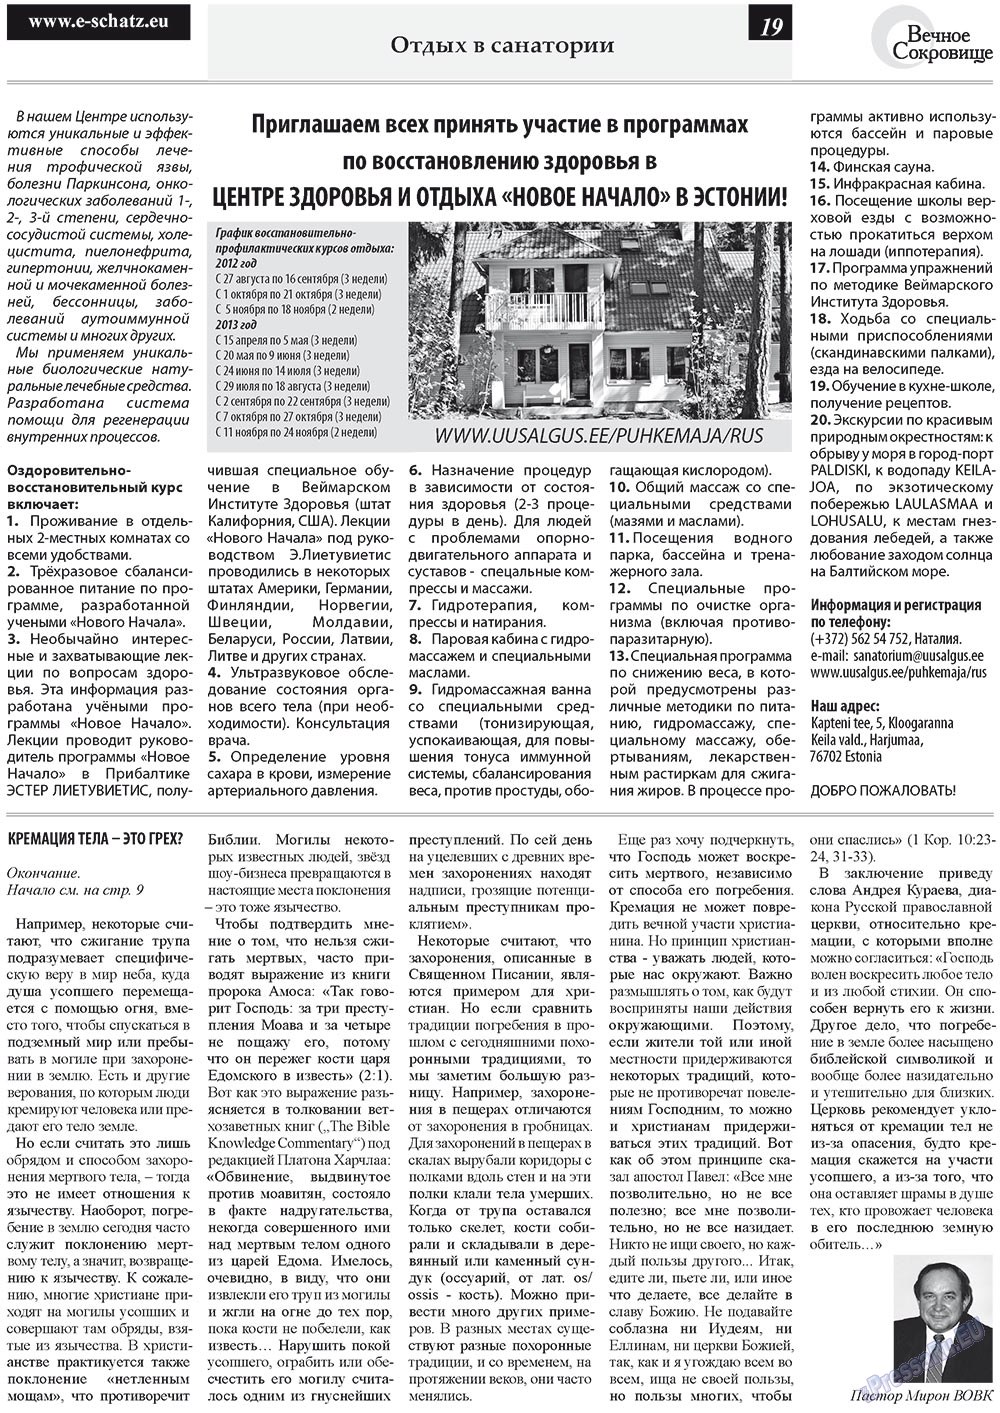 Вечное сокровище (газета). 2012 год, номер 4, стр. 19